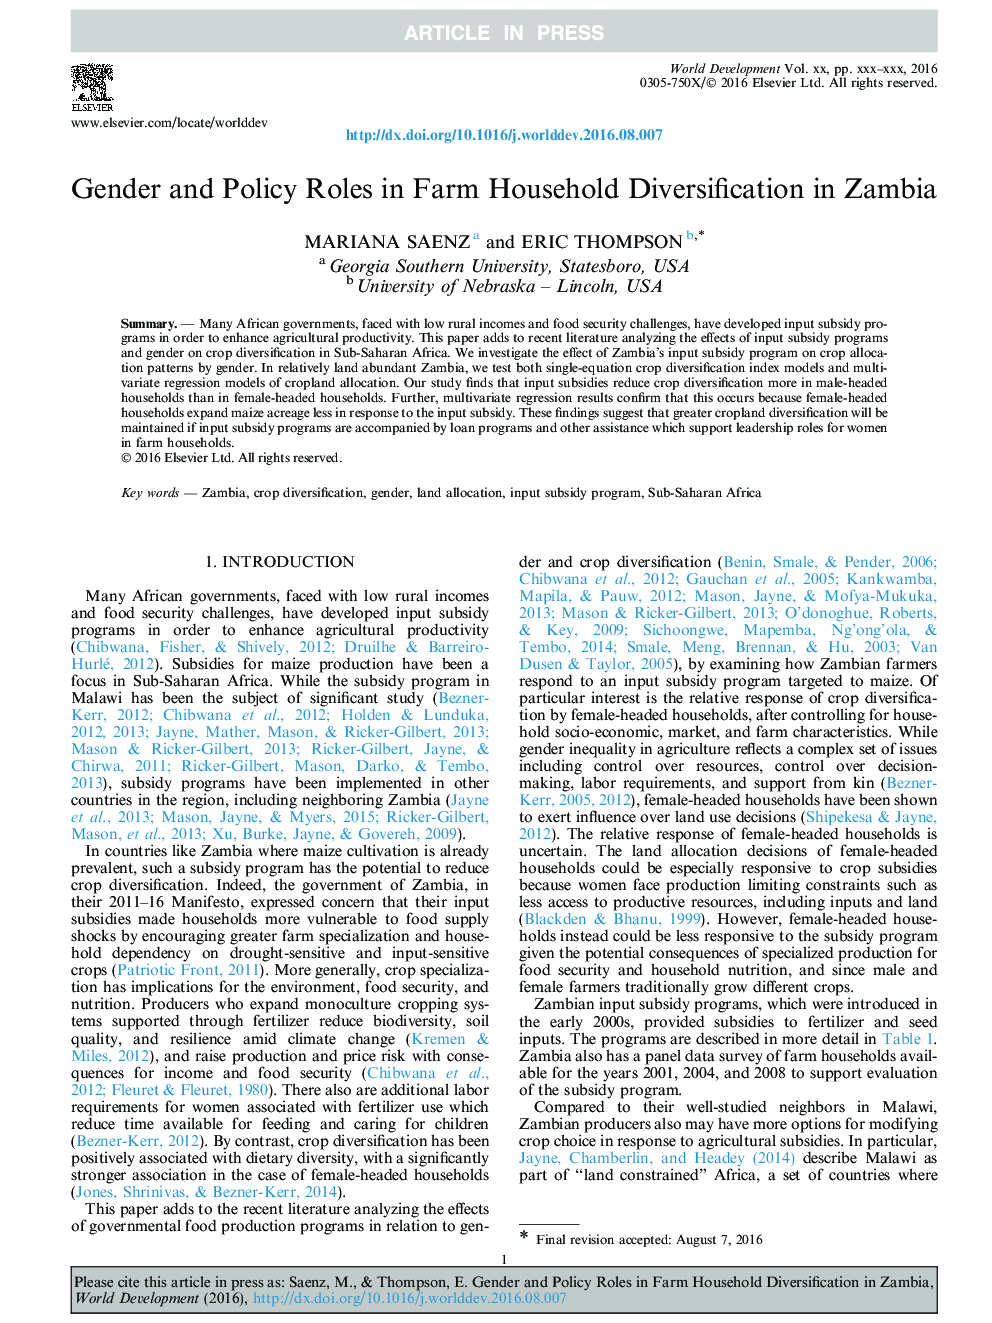 نقش جنسیتی و سیاست در تنوع زراعی خانوار در زامبیا 